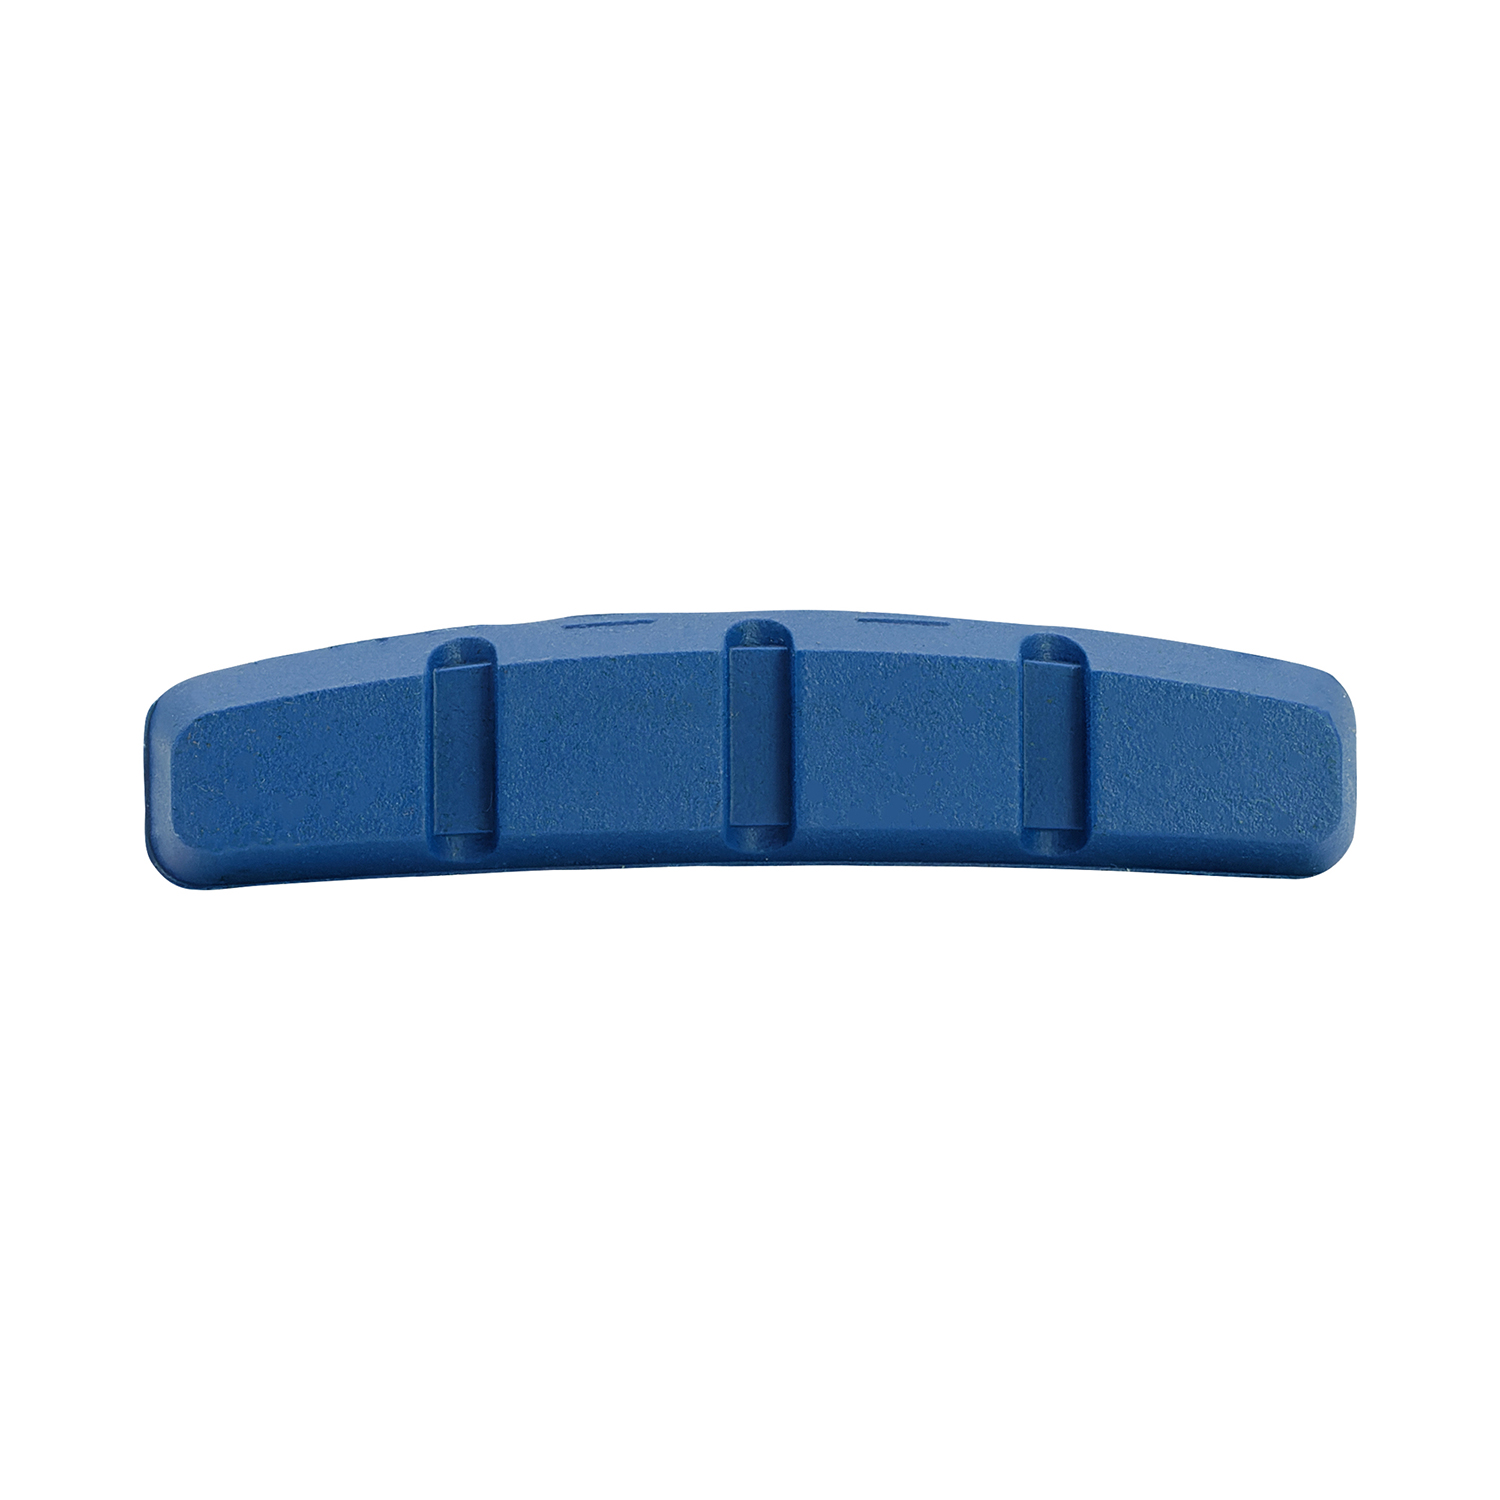 Bremsschuhe V-Brake SYMMETRISCH 70 mm, 1TC blau, 1 Paar, SB verpackt